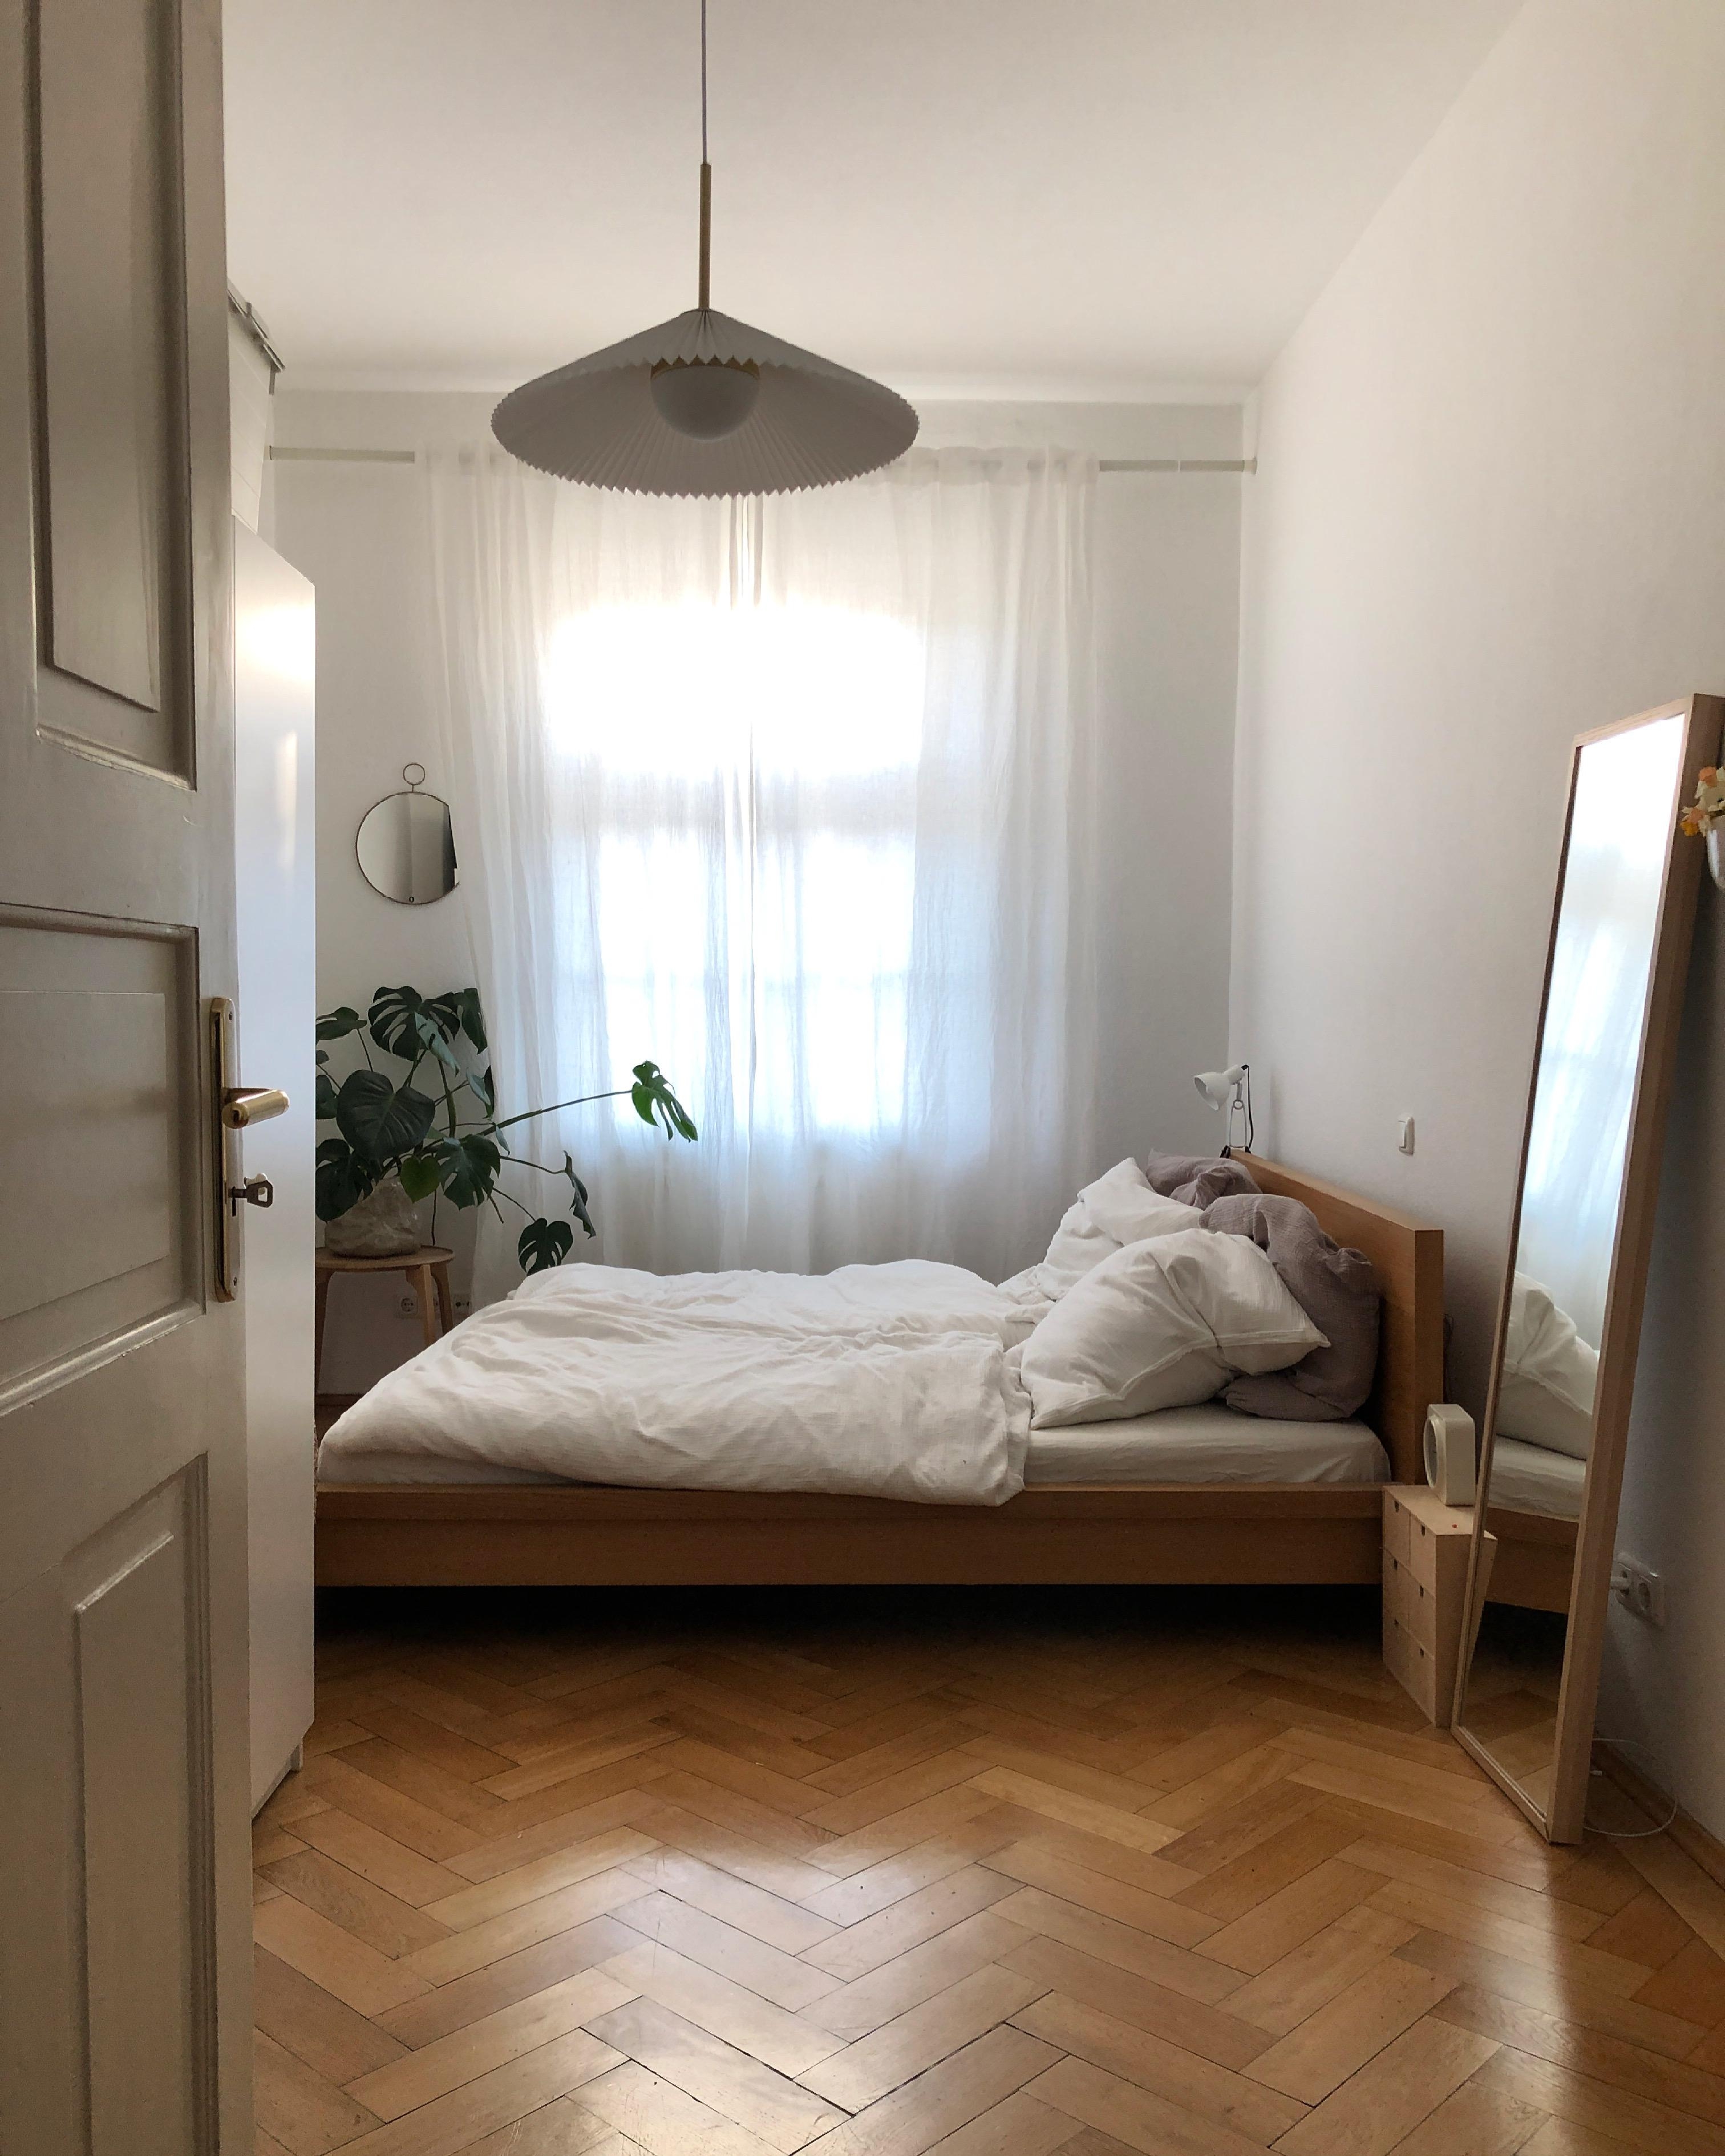 Ein Blick ins Schlafzimmer ☁️ #schlafzimmer #minimalistisch #holzbett